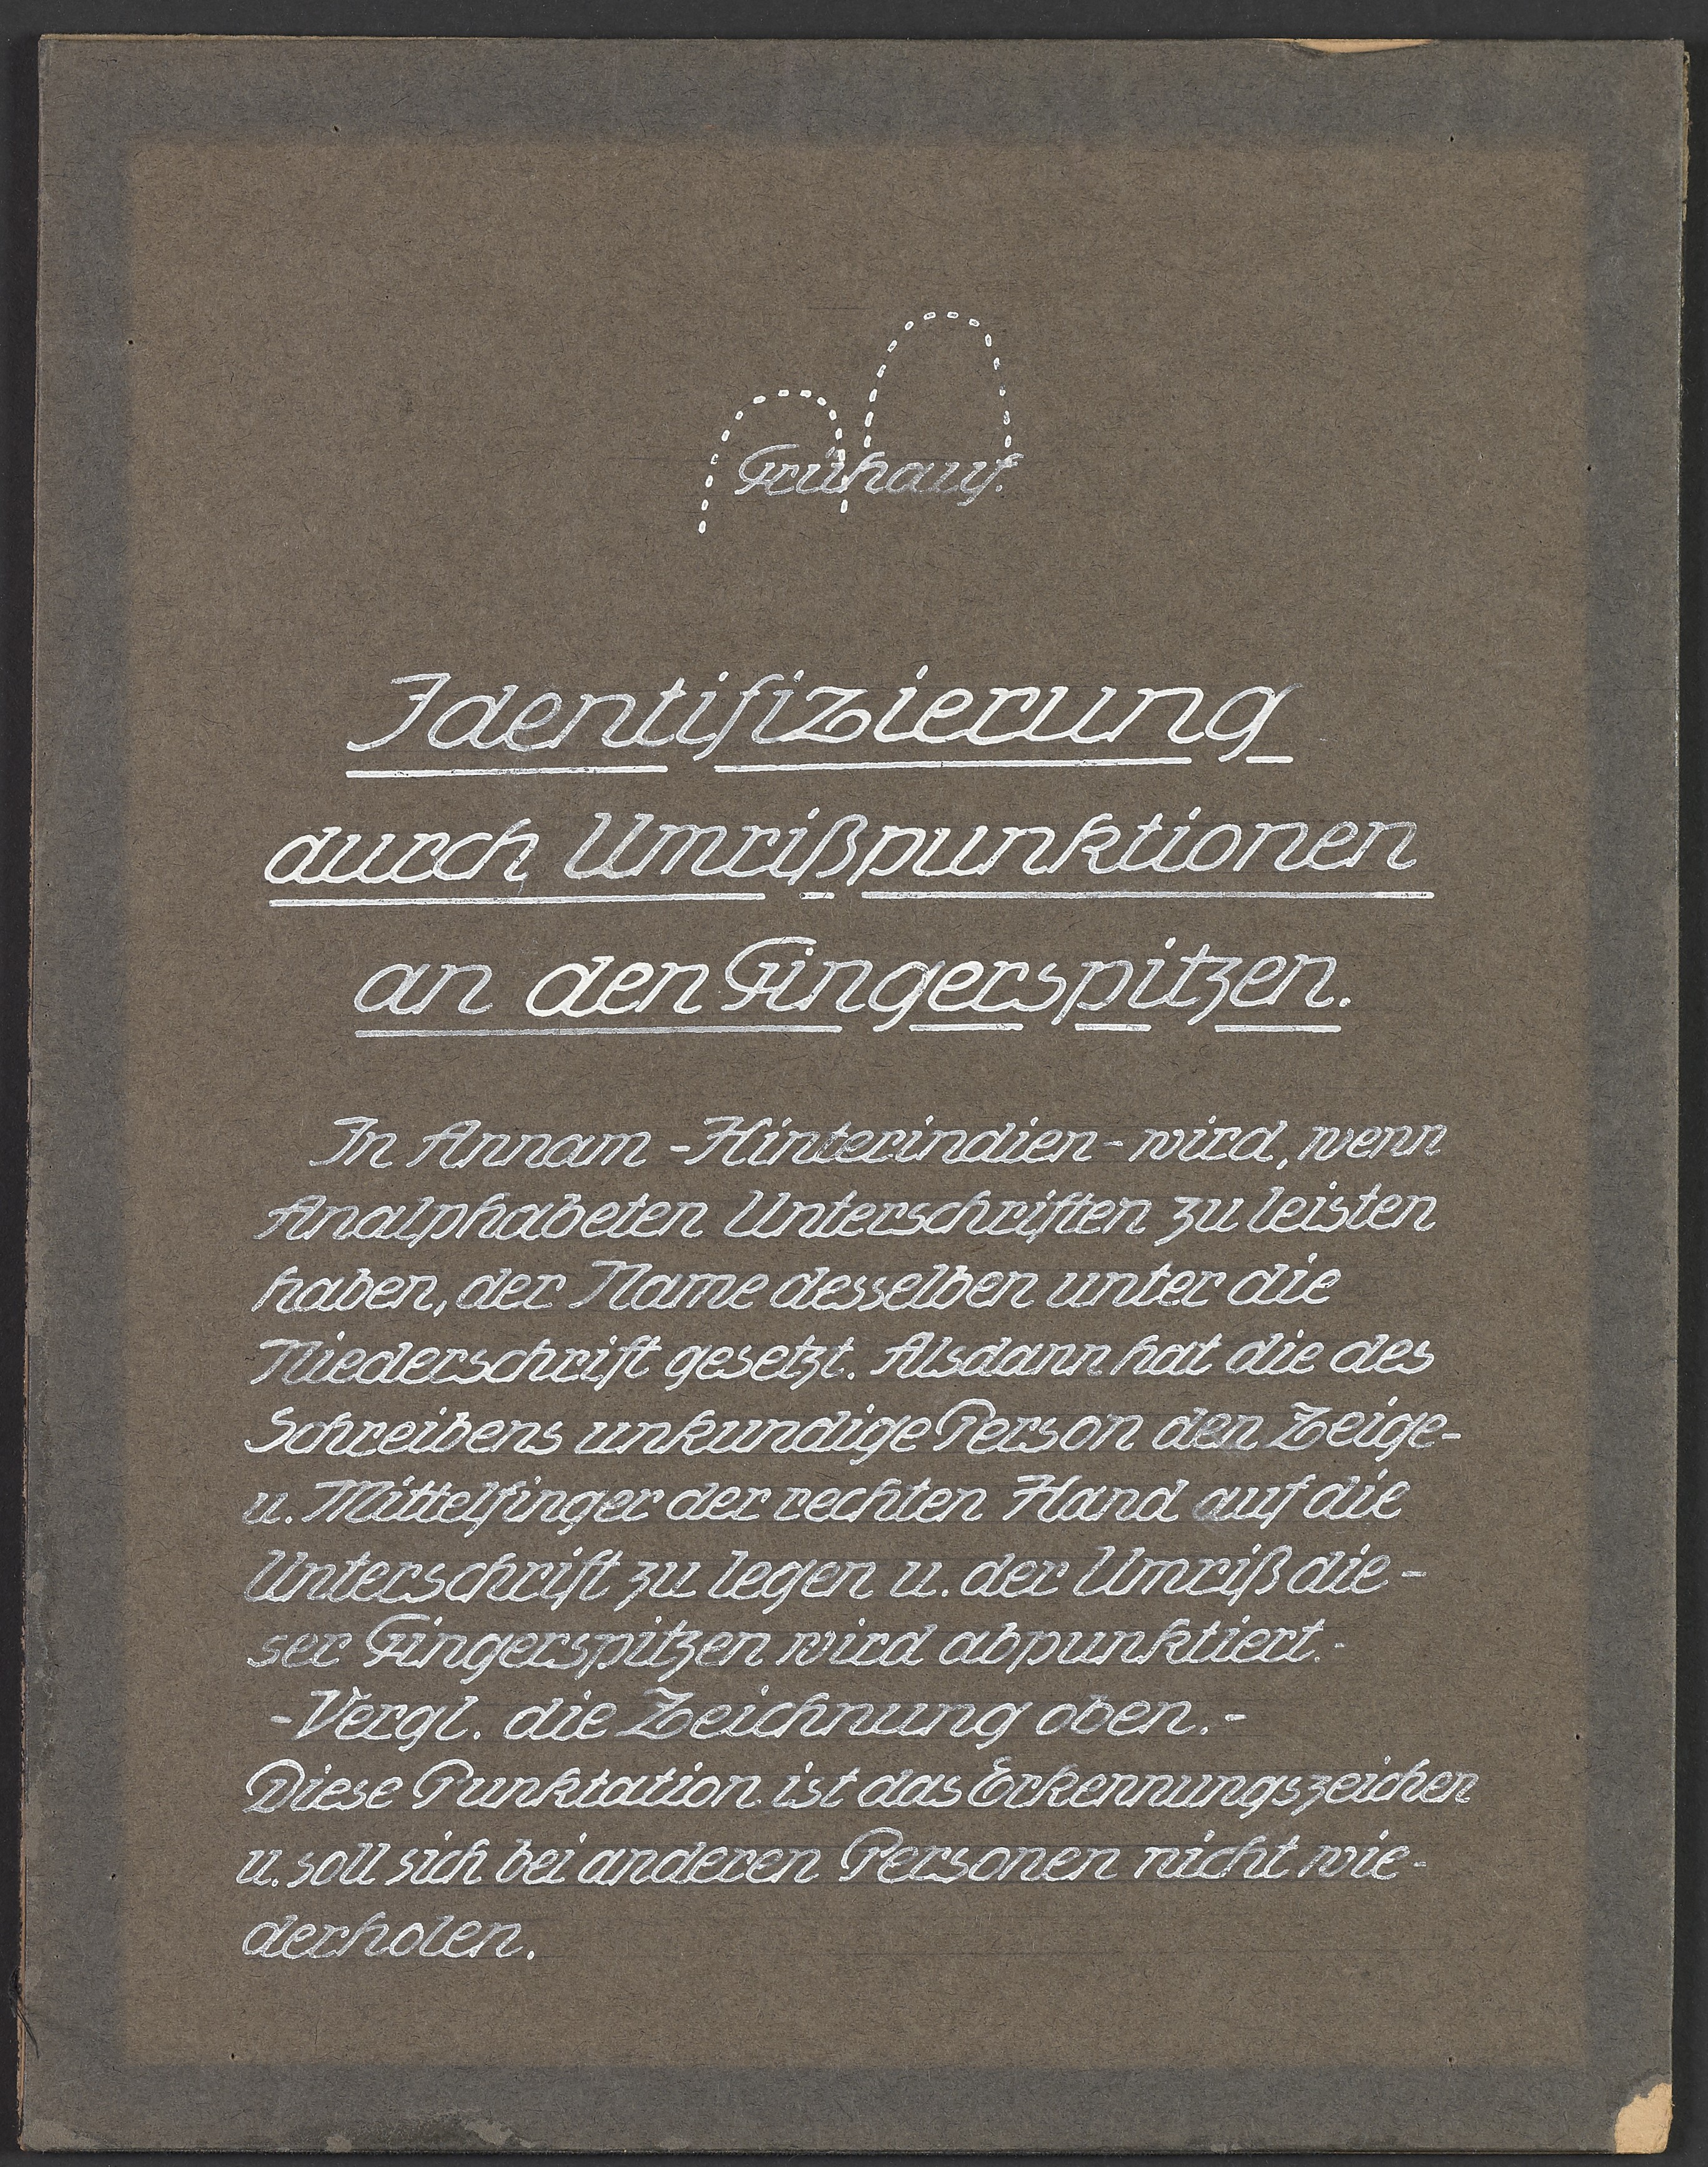 Lehrtafel "Identifizierung durch Umrisspunktionen an den Fingerspitzen" (Polizeidirektion Dresden RR-F)